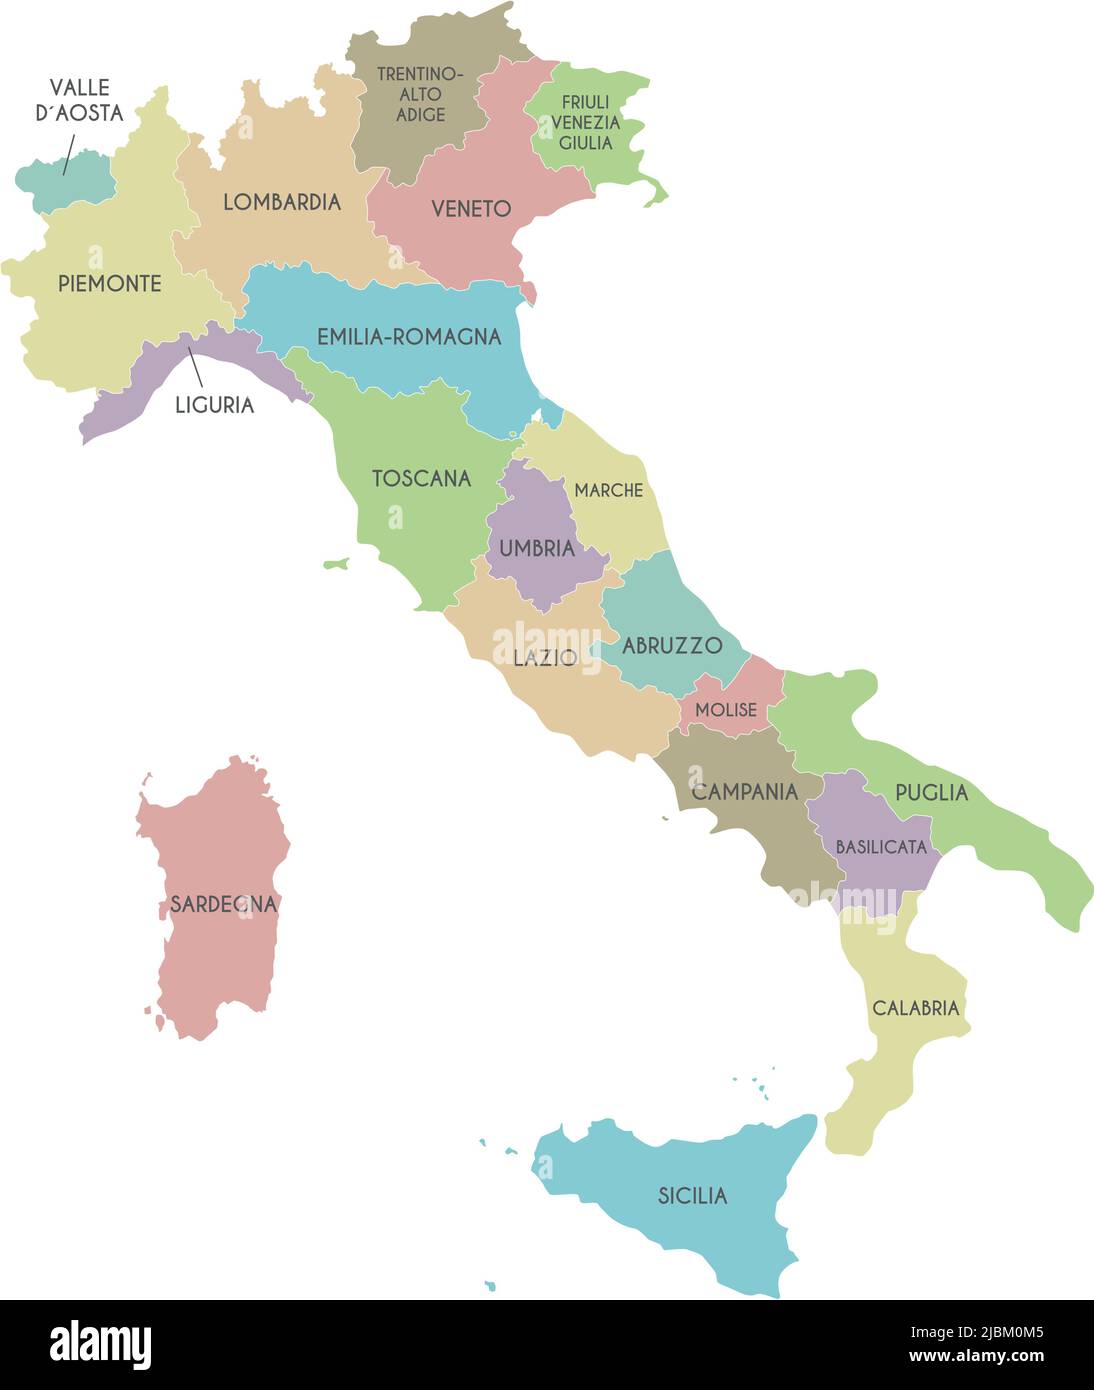 Mappa vettoriale dell'Italia con regioni e divisioni amministrative. Livelli modificabili e chiaramente etichettati. Illustrazione Vettoriale